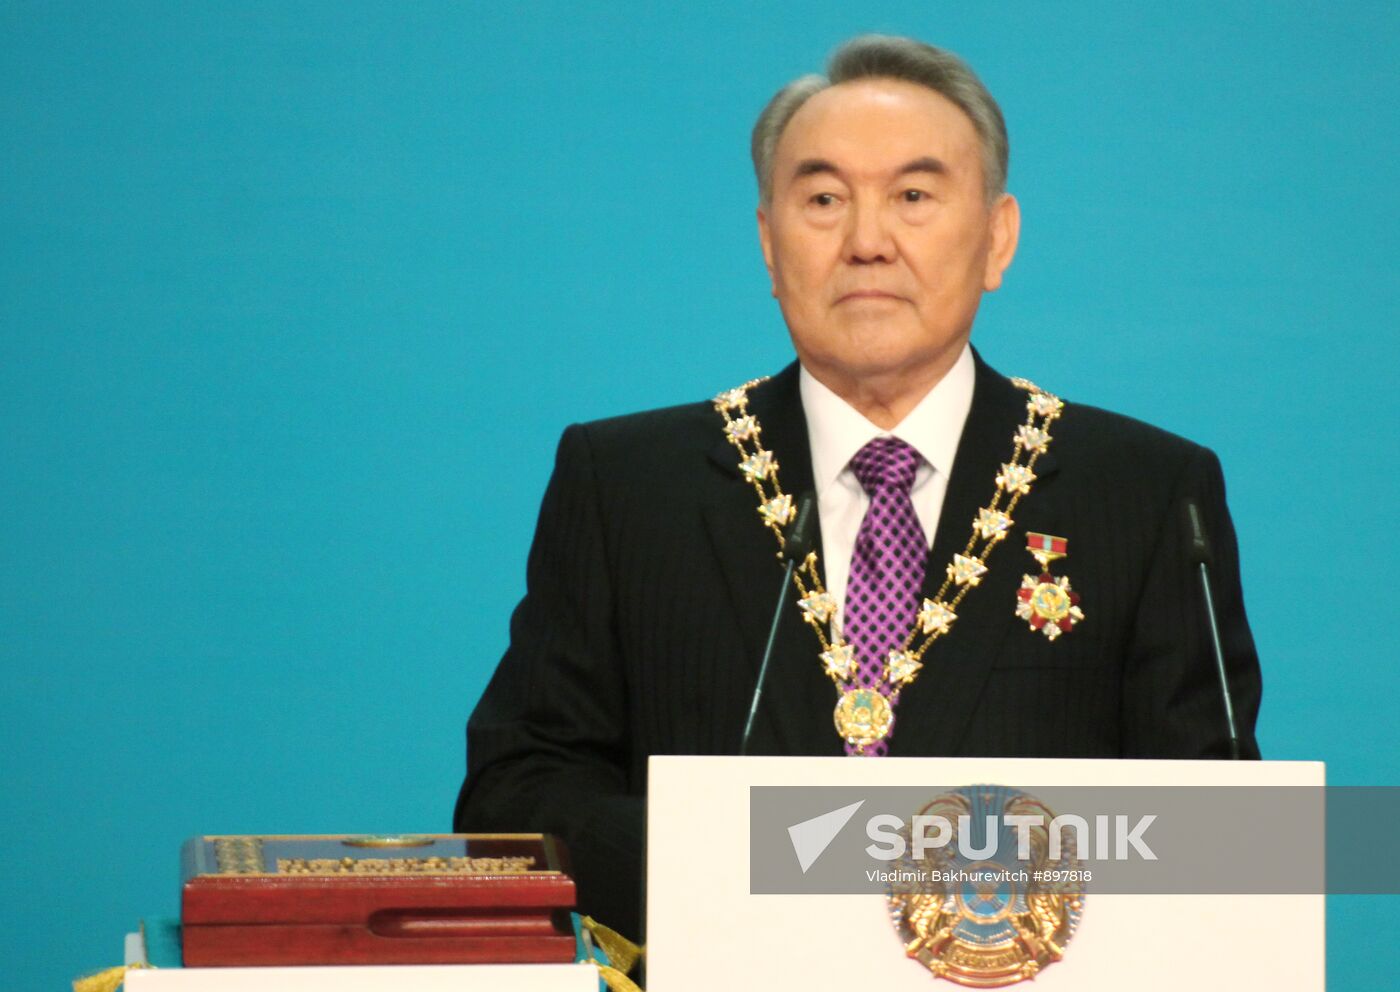 Inauguration of Kazakh President Nursultan Nazarbayev